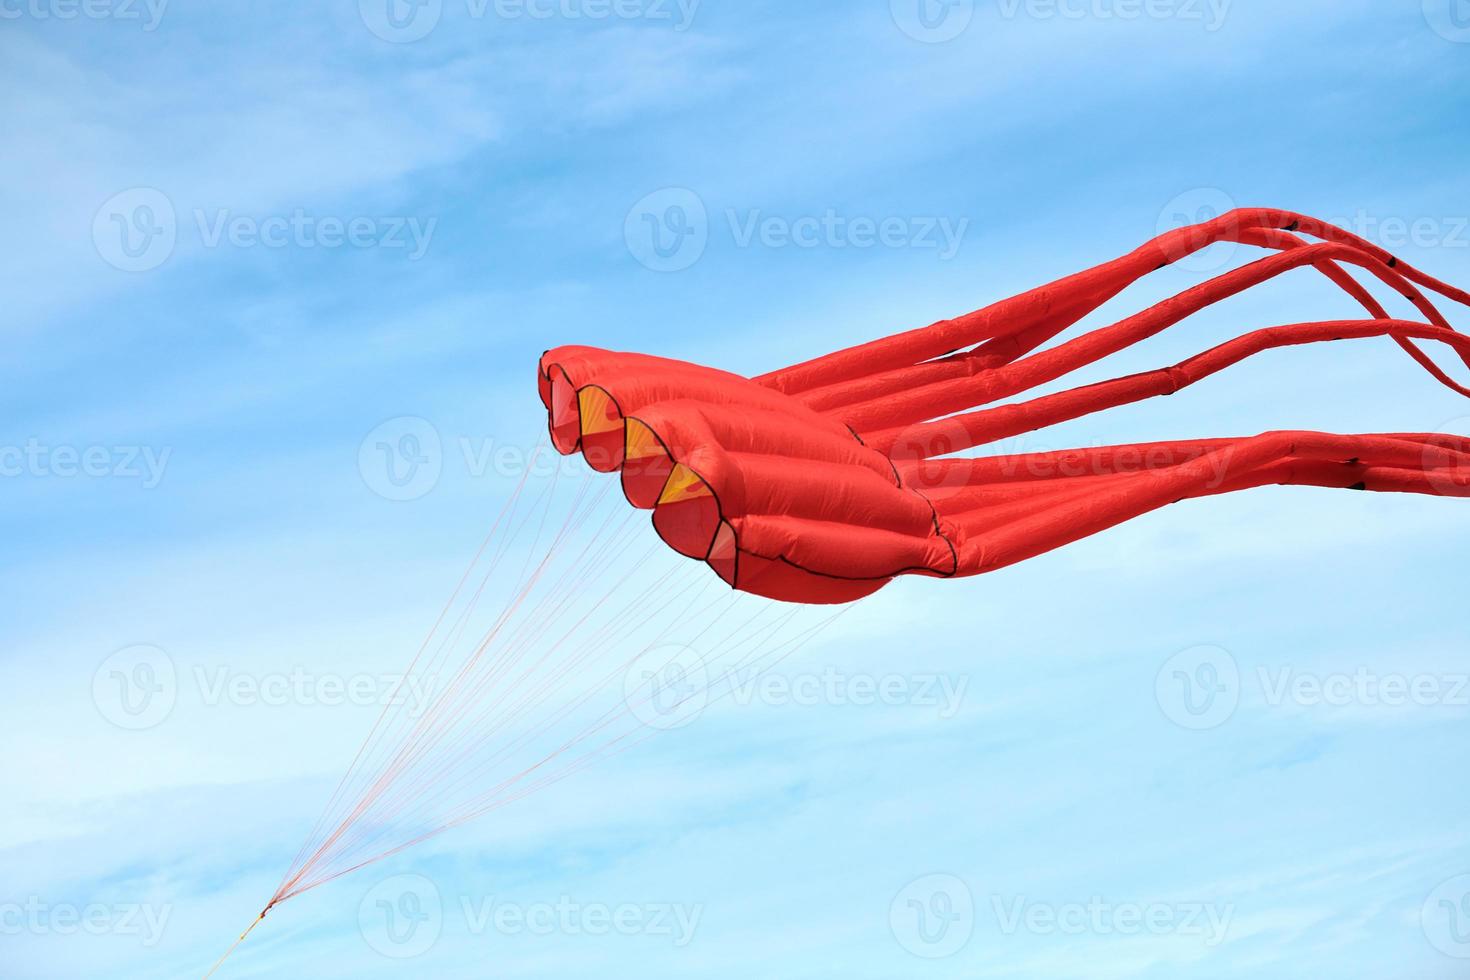 ljusröd rosa bläckfiskdrake som flyger på blå himmel med moln, röd bläckfiskformad drake, drakfestival foto